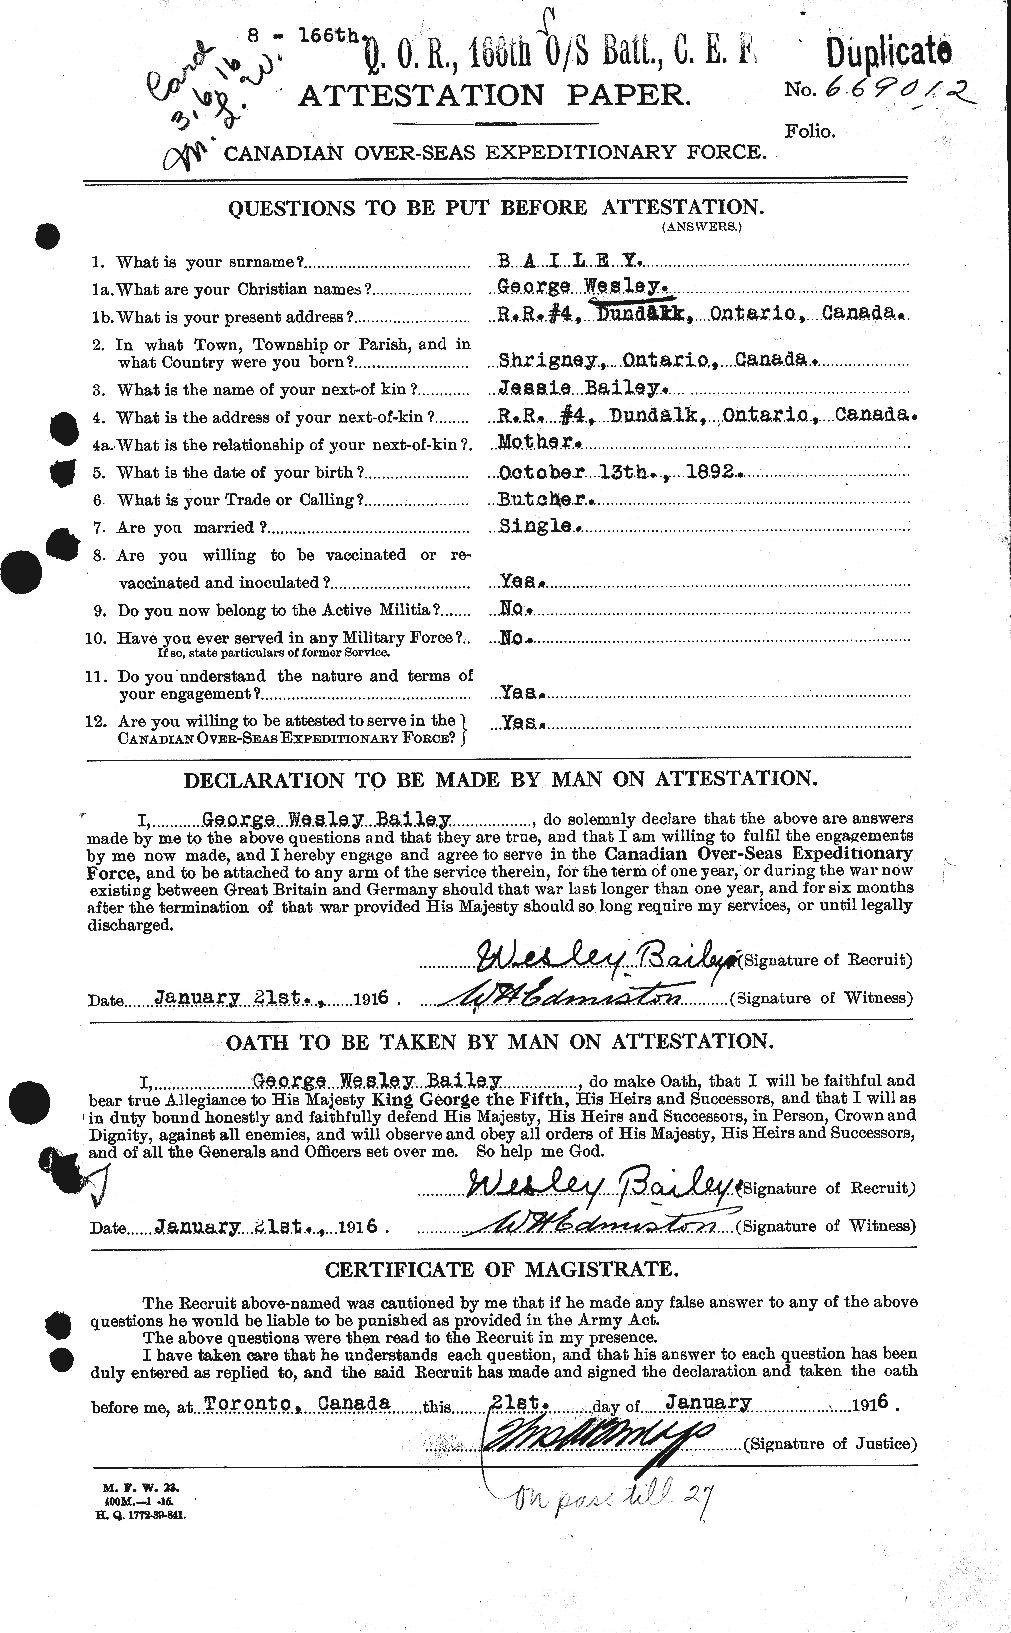 Dossiers du Personnel de la Première Guerre mondiale - CEC 218938a